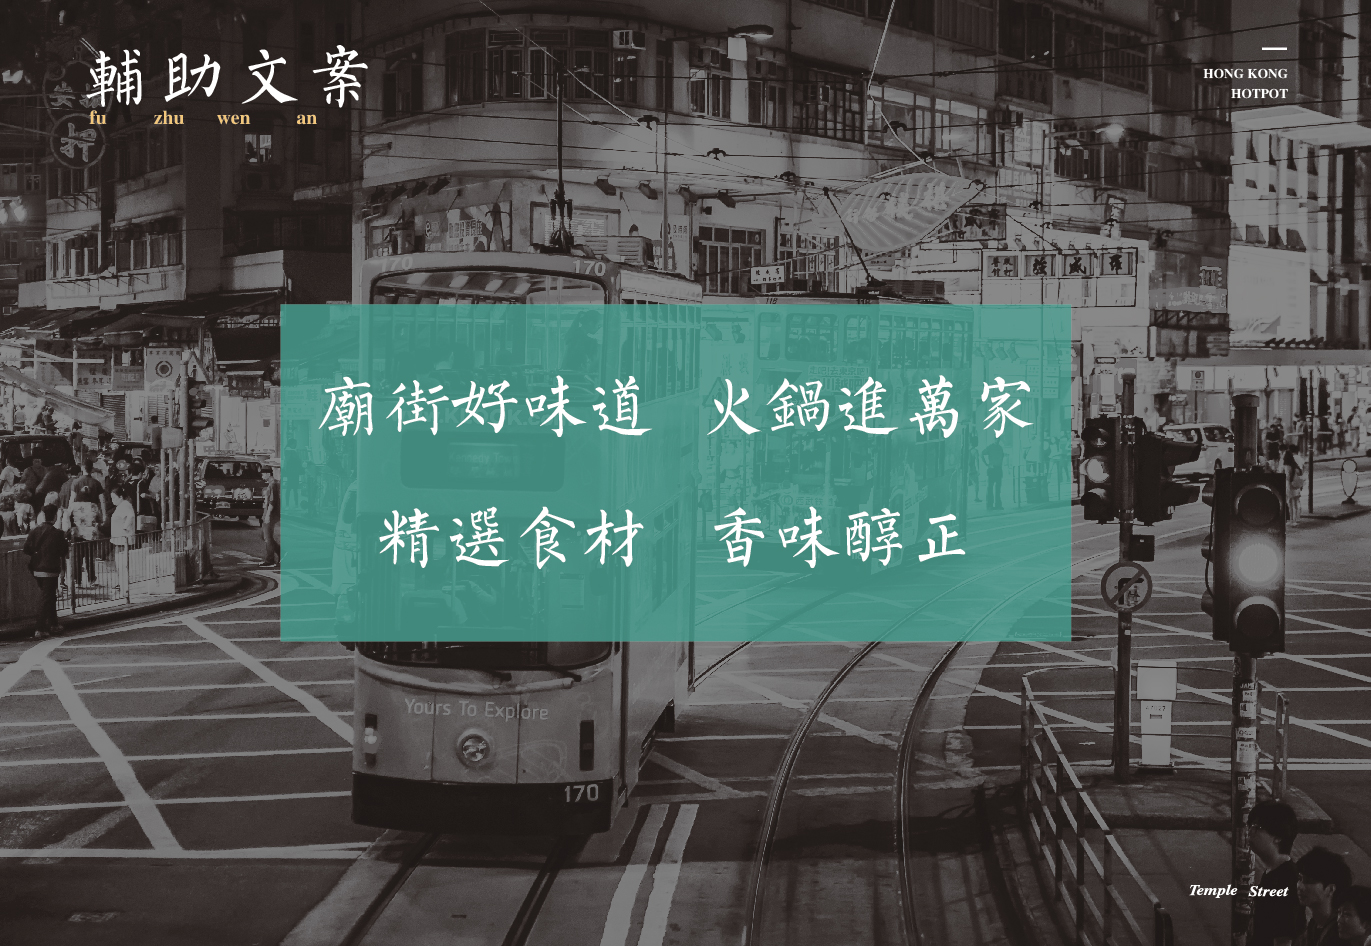 庙街香港火锅logo设计图片